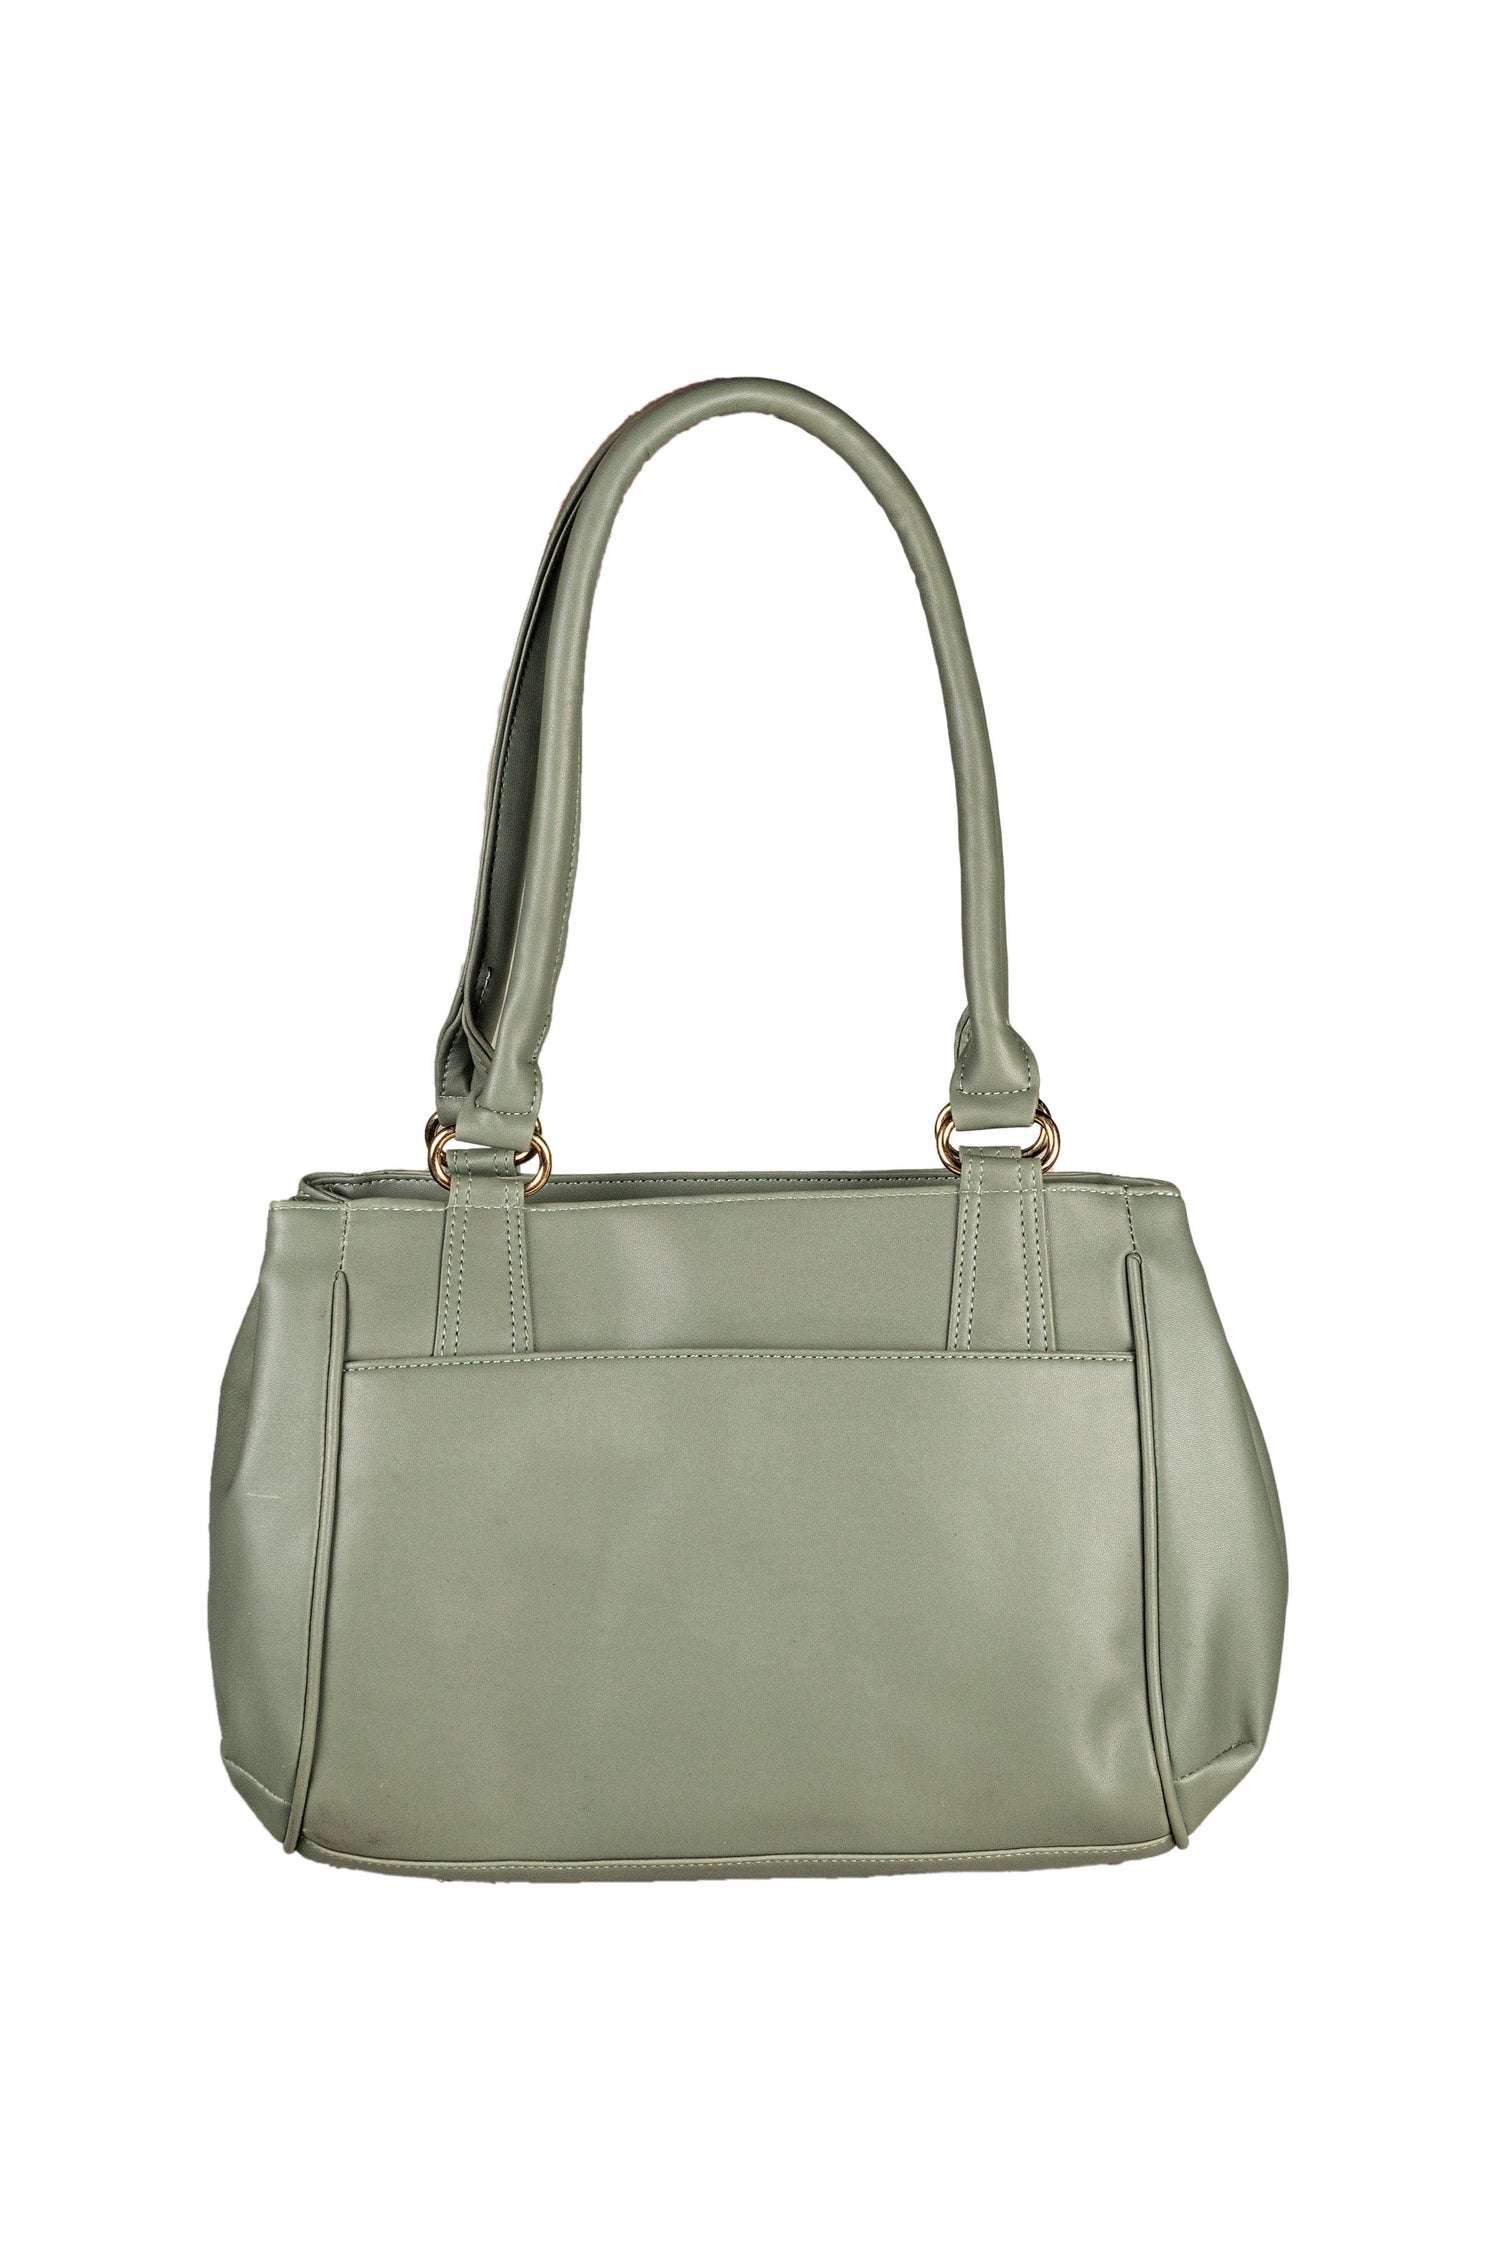 Titas Ladies Olive Handbags